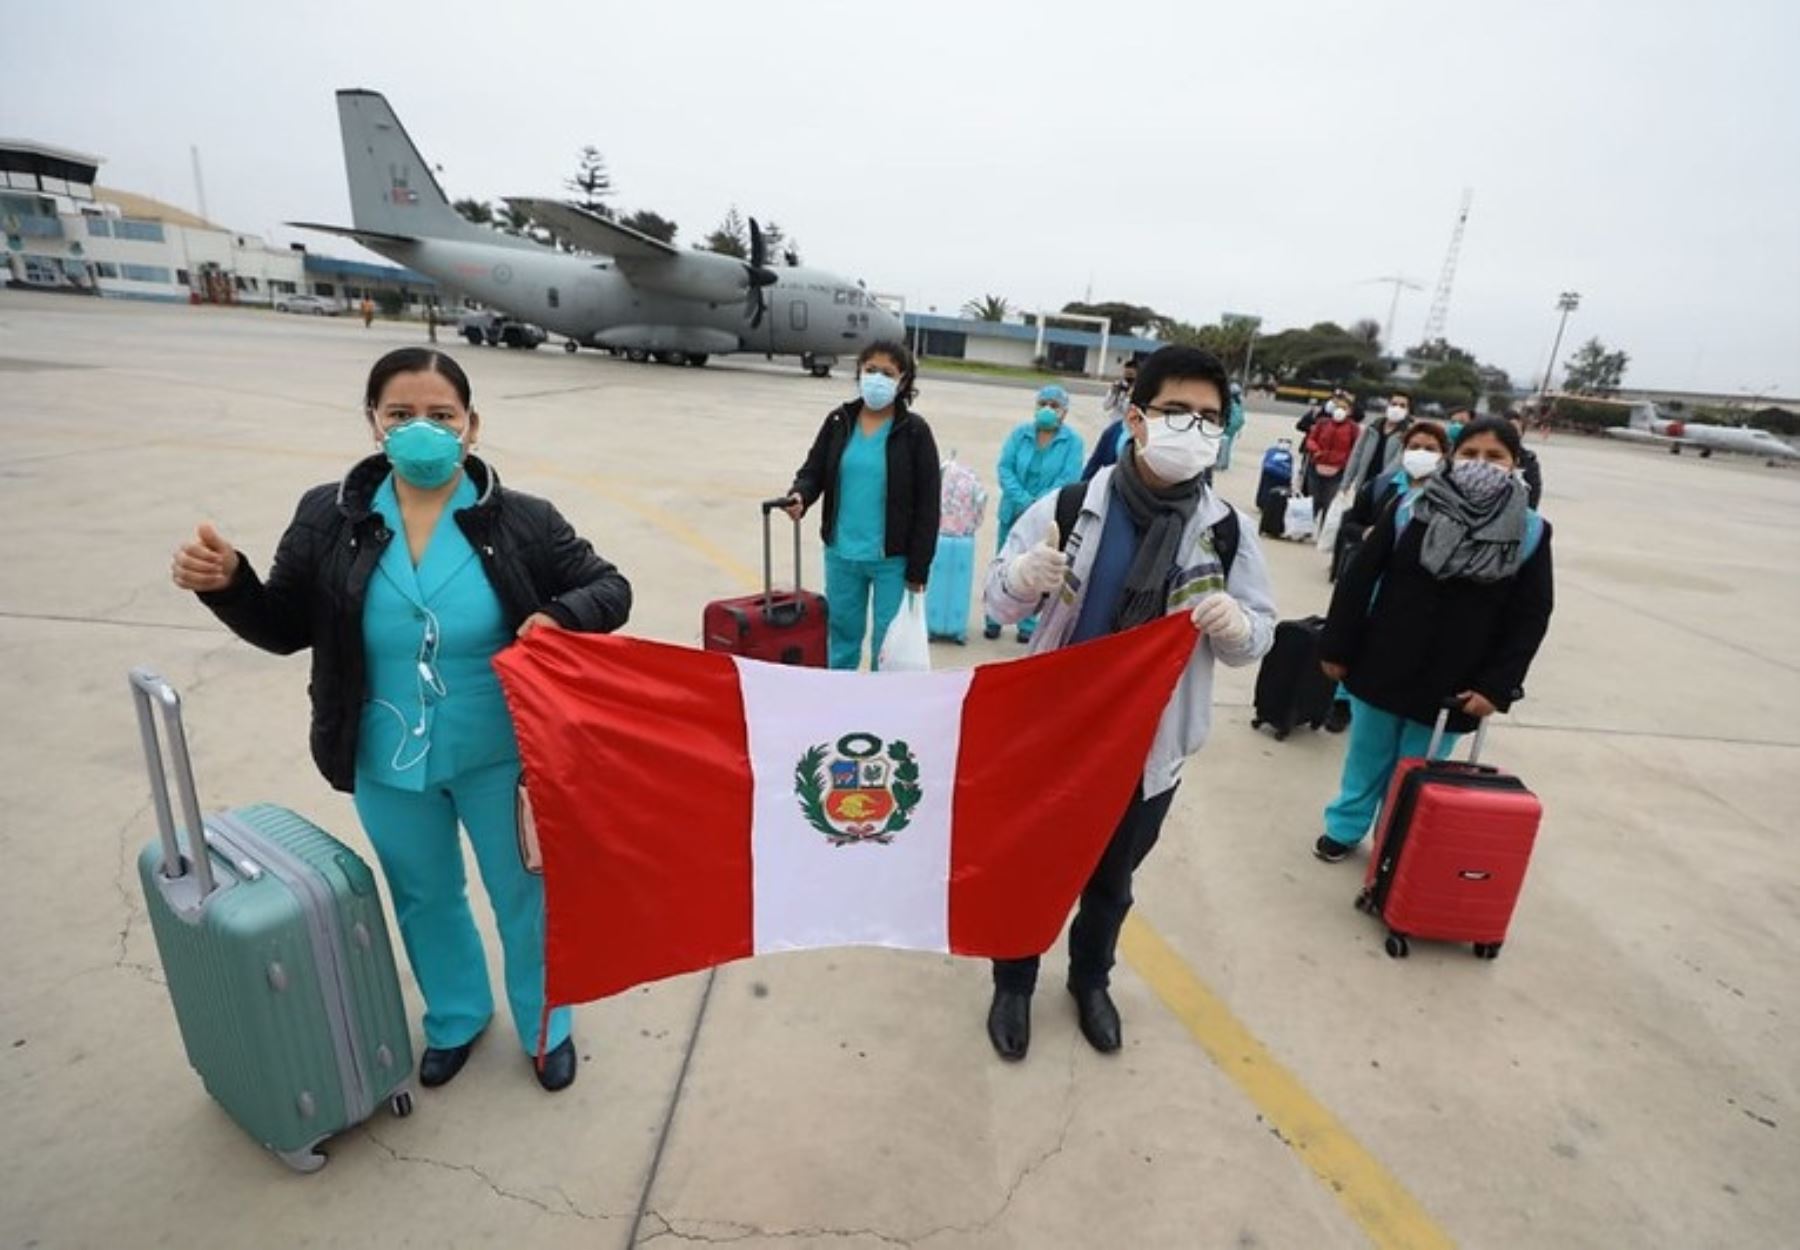 Un total de 36 profesionales de la salud, entre médicos, enfermeras y técnicos, viajaron hoy con destino a Amazonas y Madre de Dios para reforzar la atención contra el coronavirus. ANDINA/Difusión